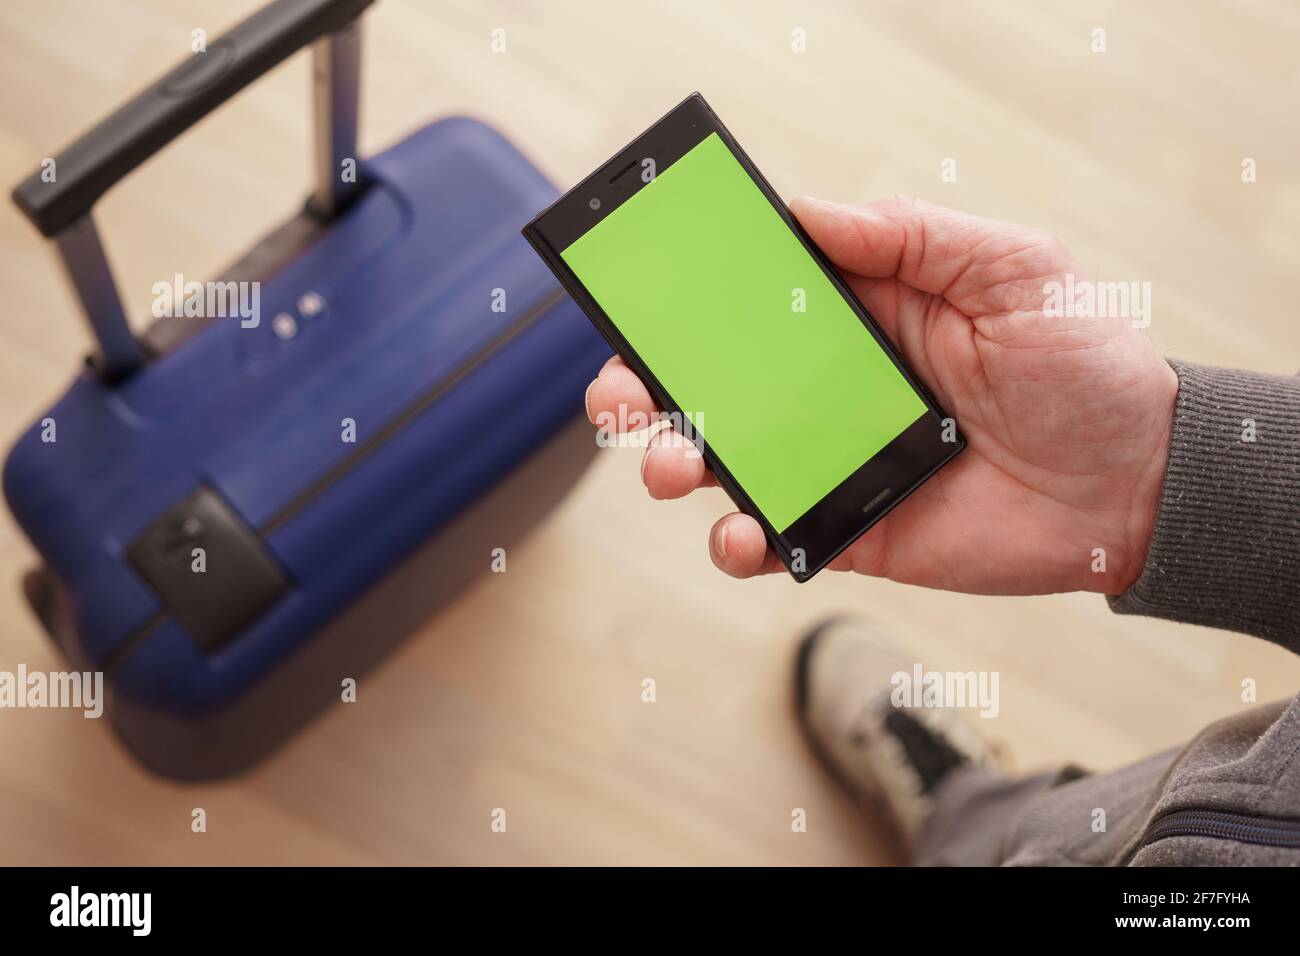 Teléfono móvil en la mano con teléfono verde vacío pantalla verde contra el fondo de una maleta Foto de stock